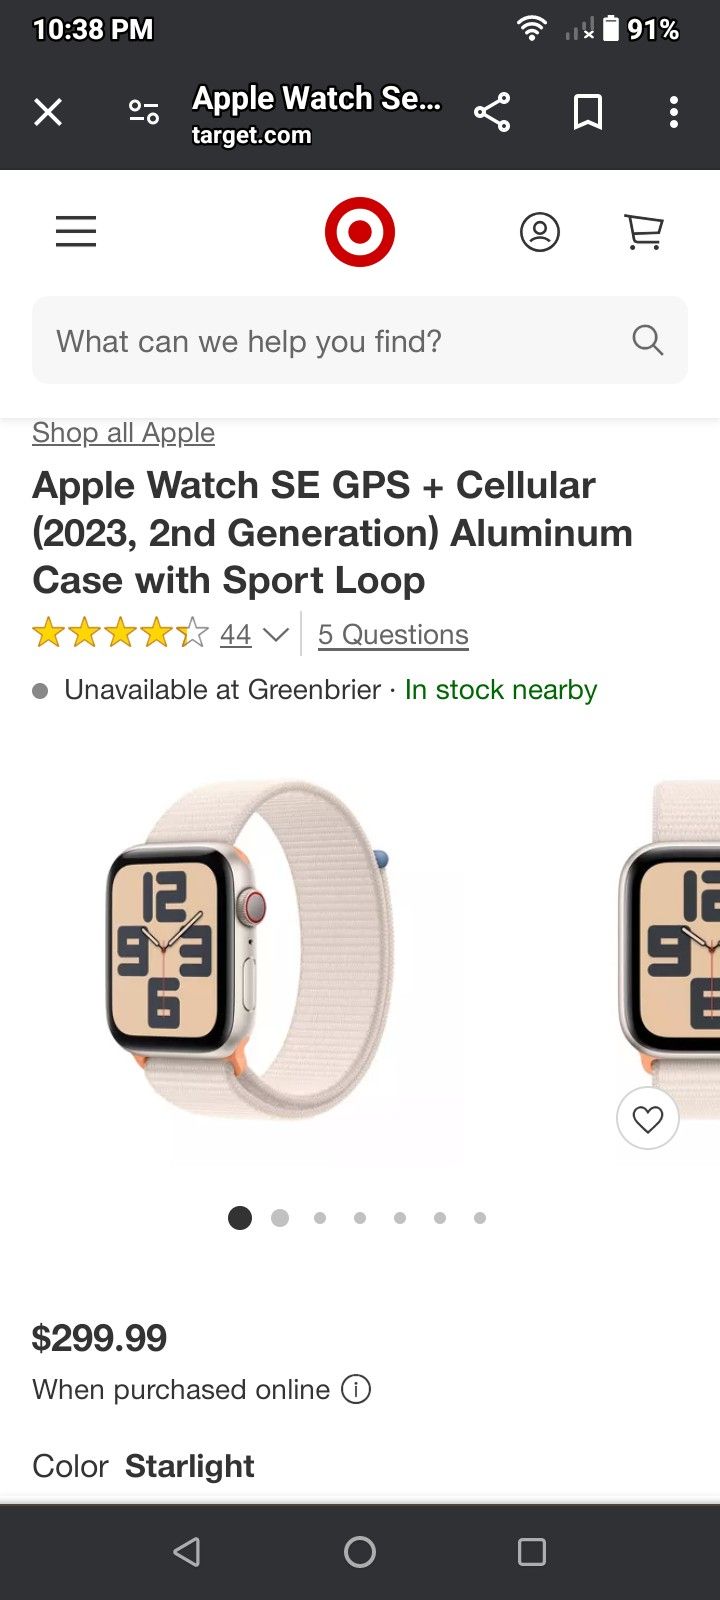 Apple Watch SE Gen For $200